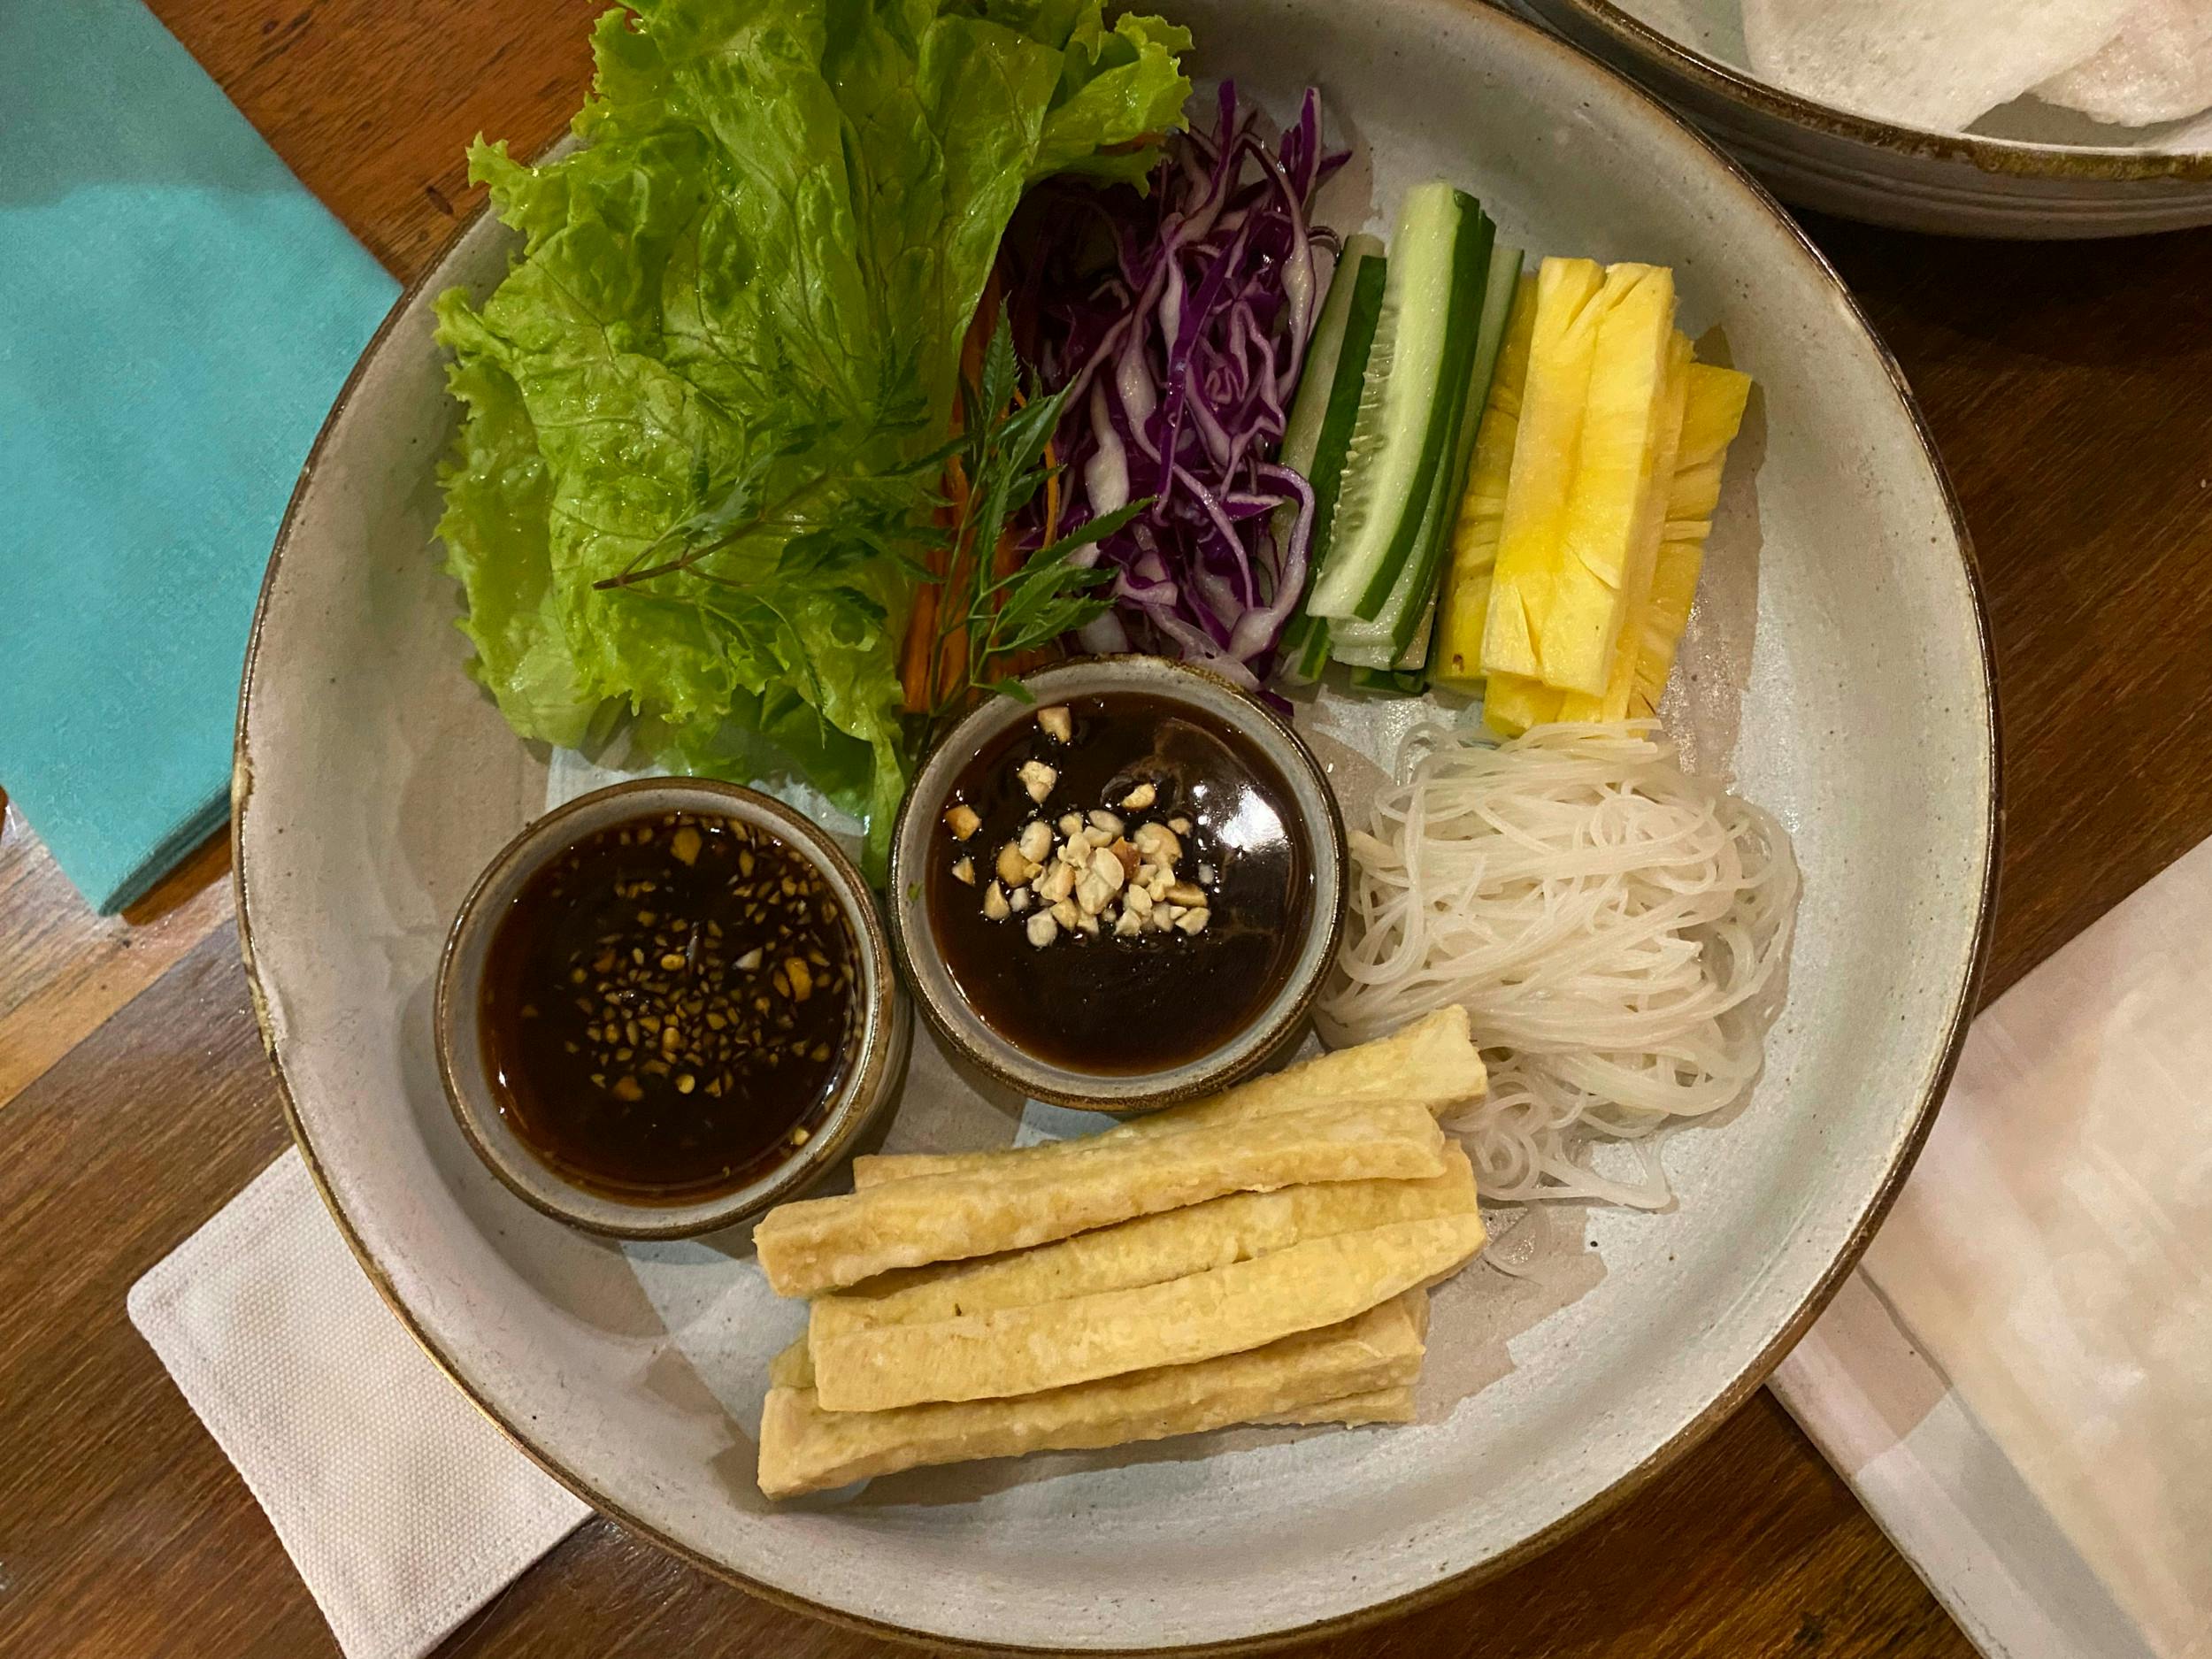 Byen byder på ekstremt god vietnamesisk mad. Super fine restauranter, også fiskerestauranter, et par smarte caféer og masser af street food. Vietnameserne har virkelig styr på deres madhygiejne, så man kan fint spise i gadekøkkener og på markedet.